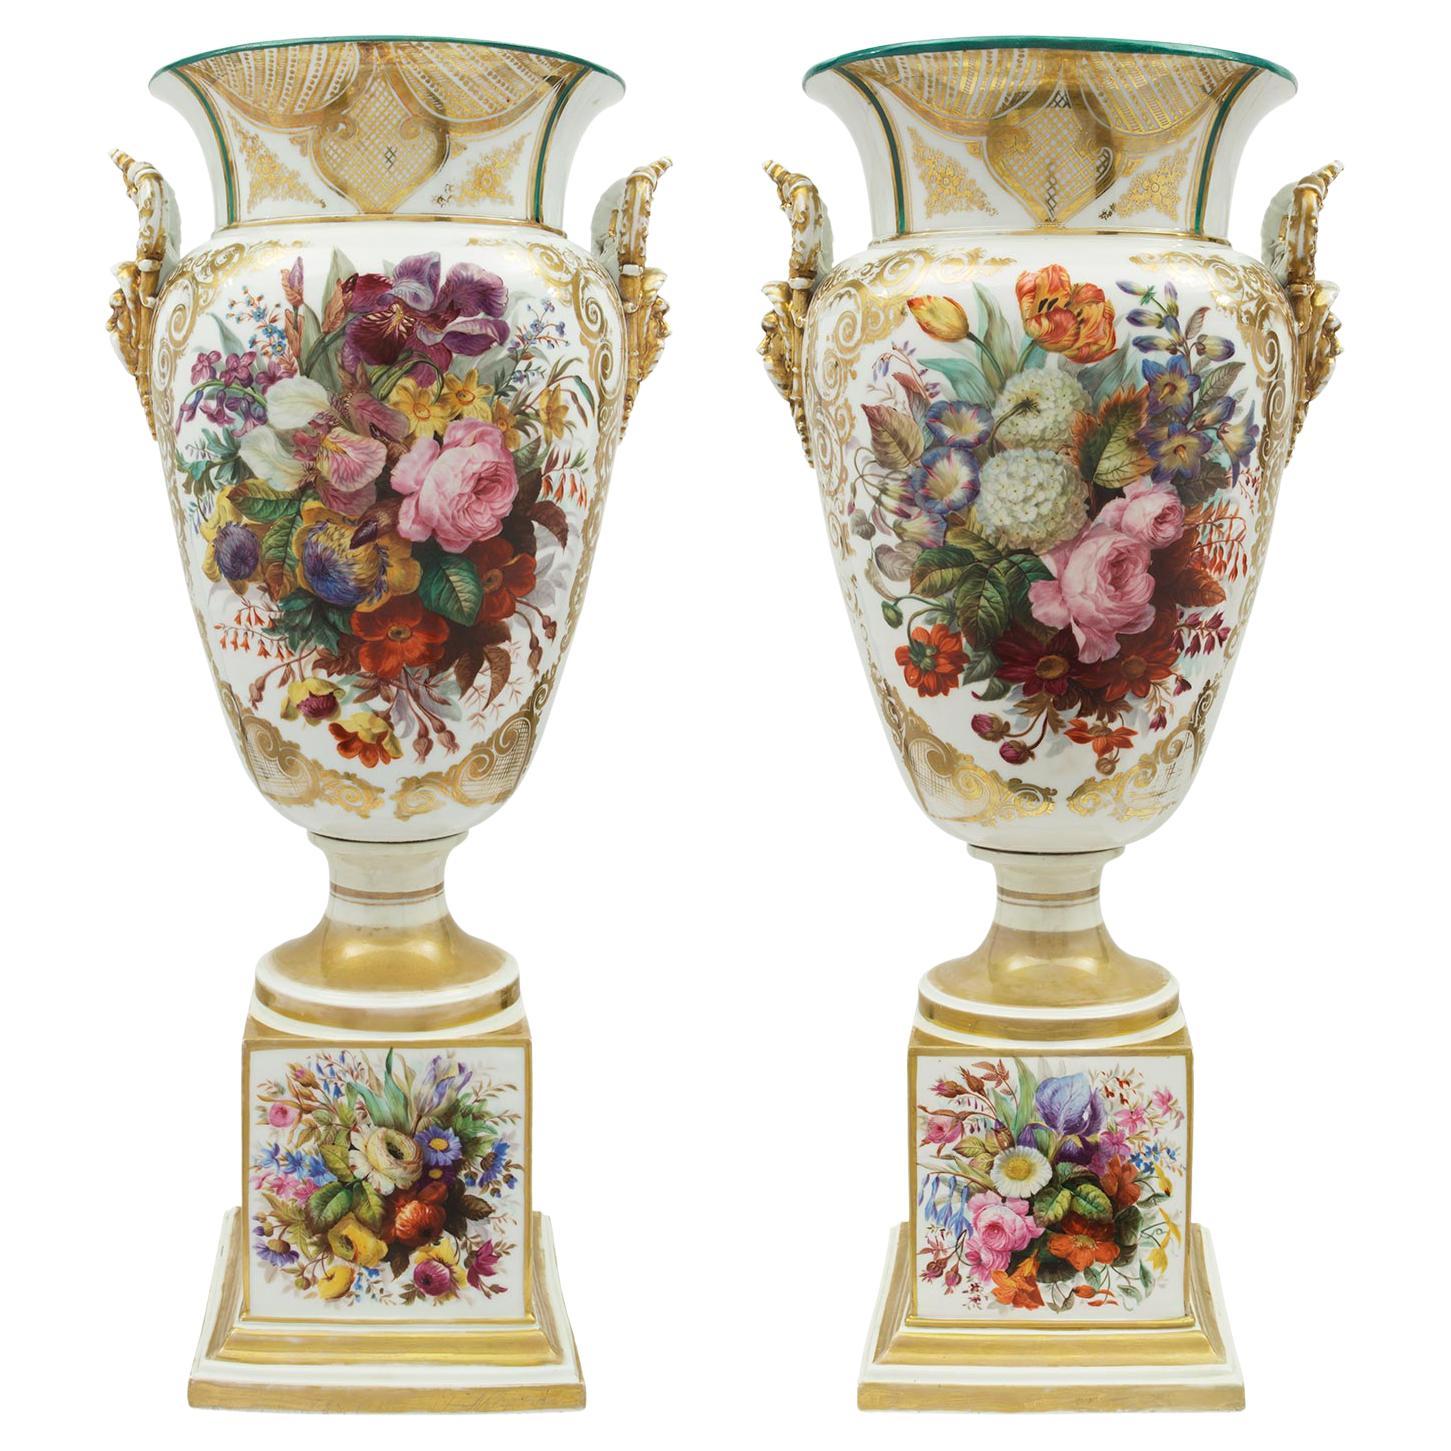 Paar französische Sèvres-Porzellanvasen im Louis-XVI-Stil des frühen 19. Jahrhunderts